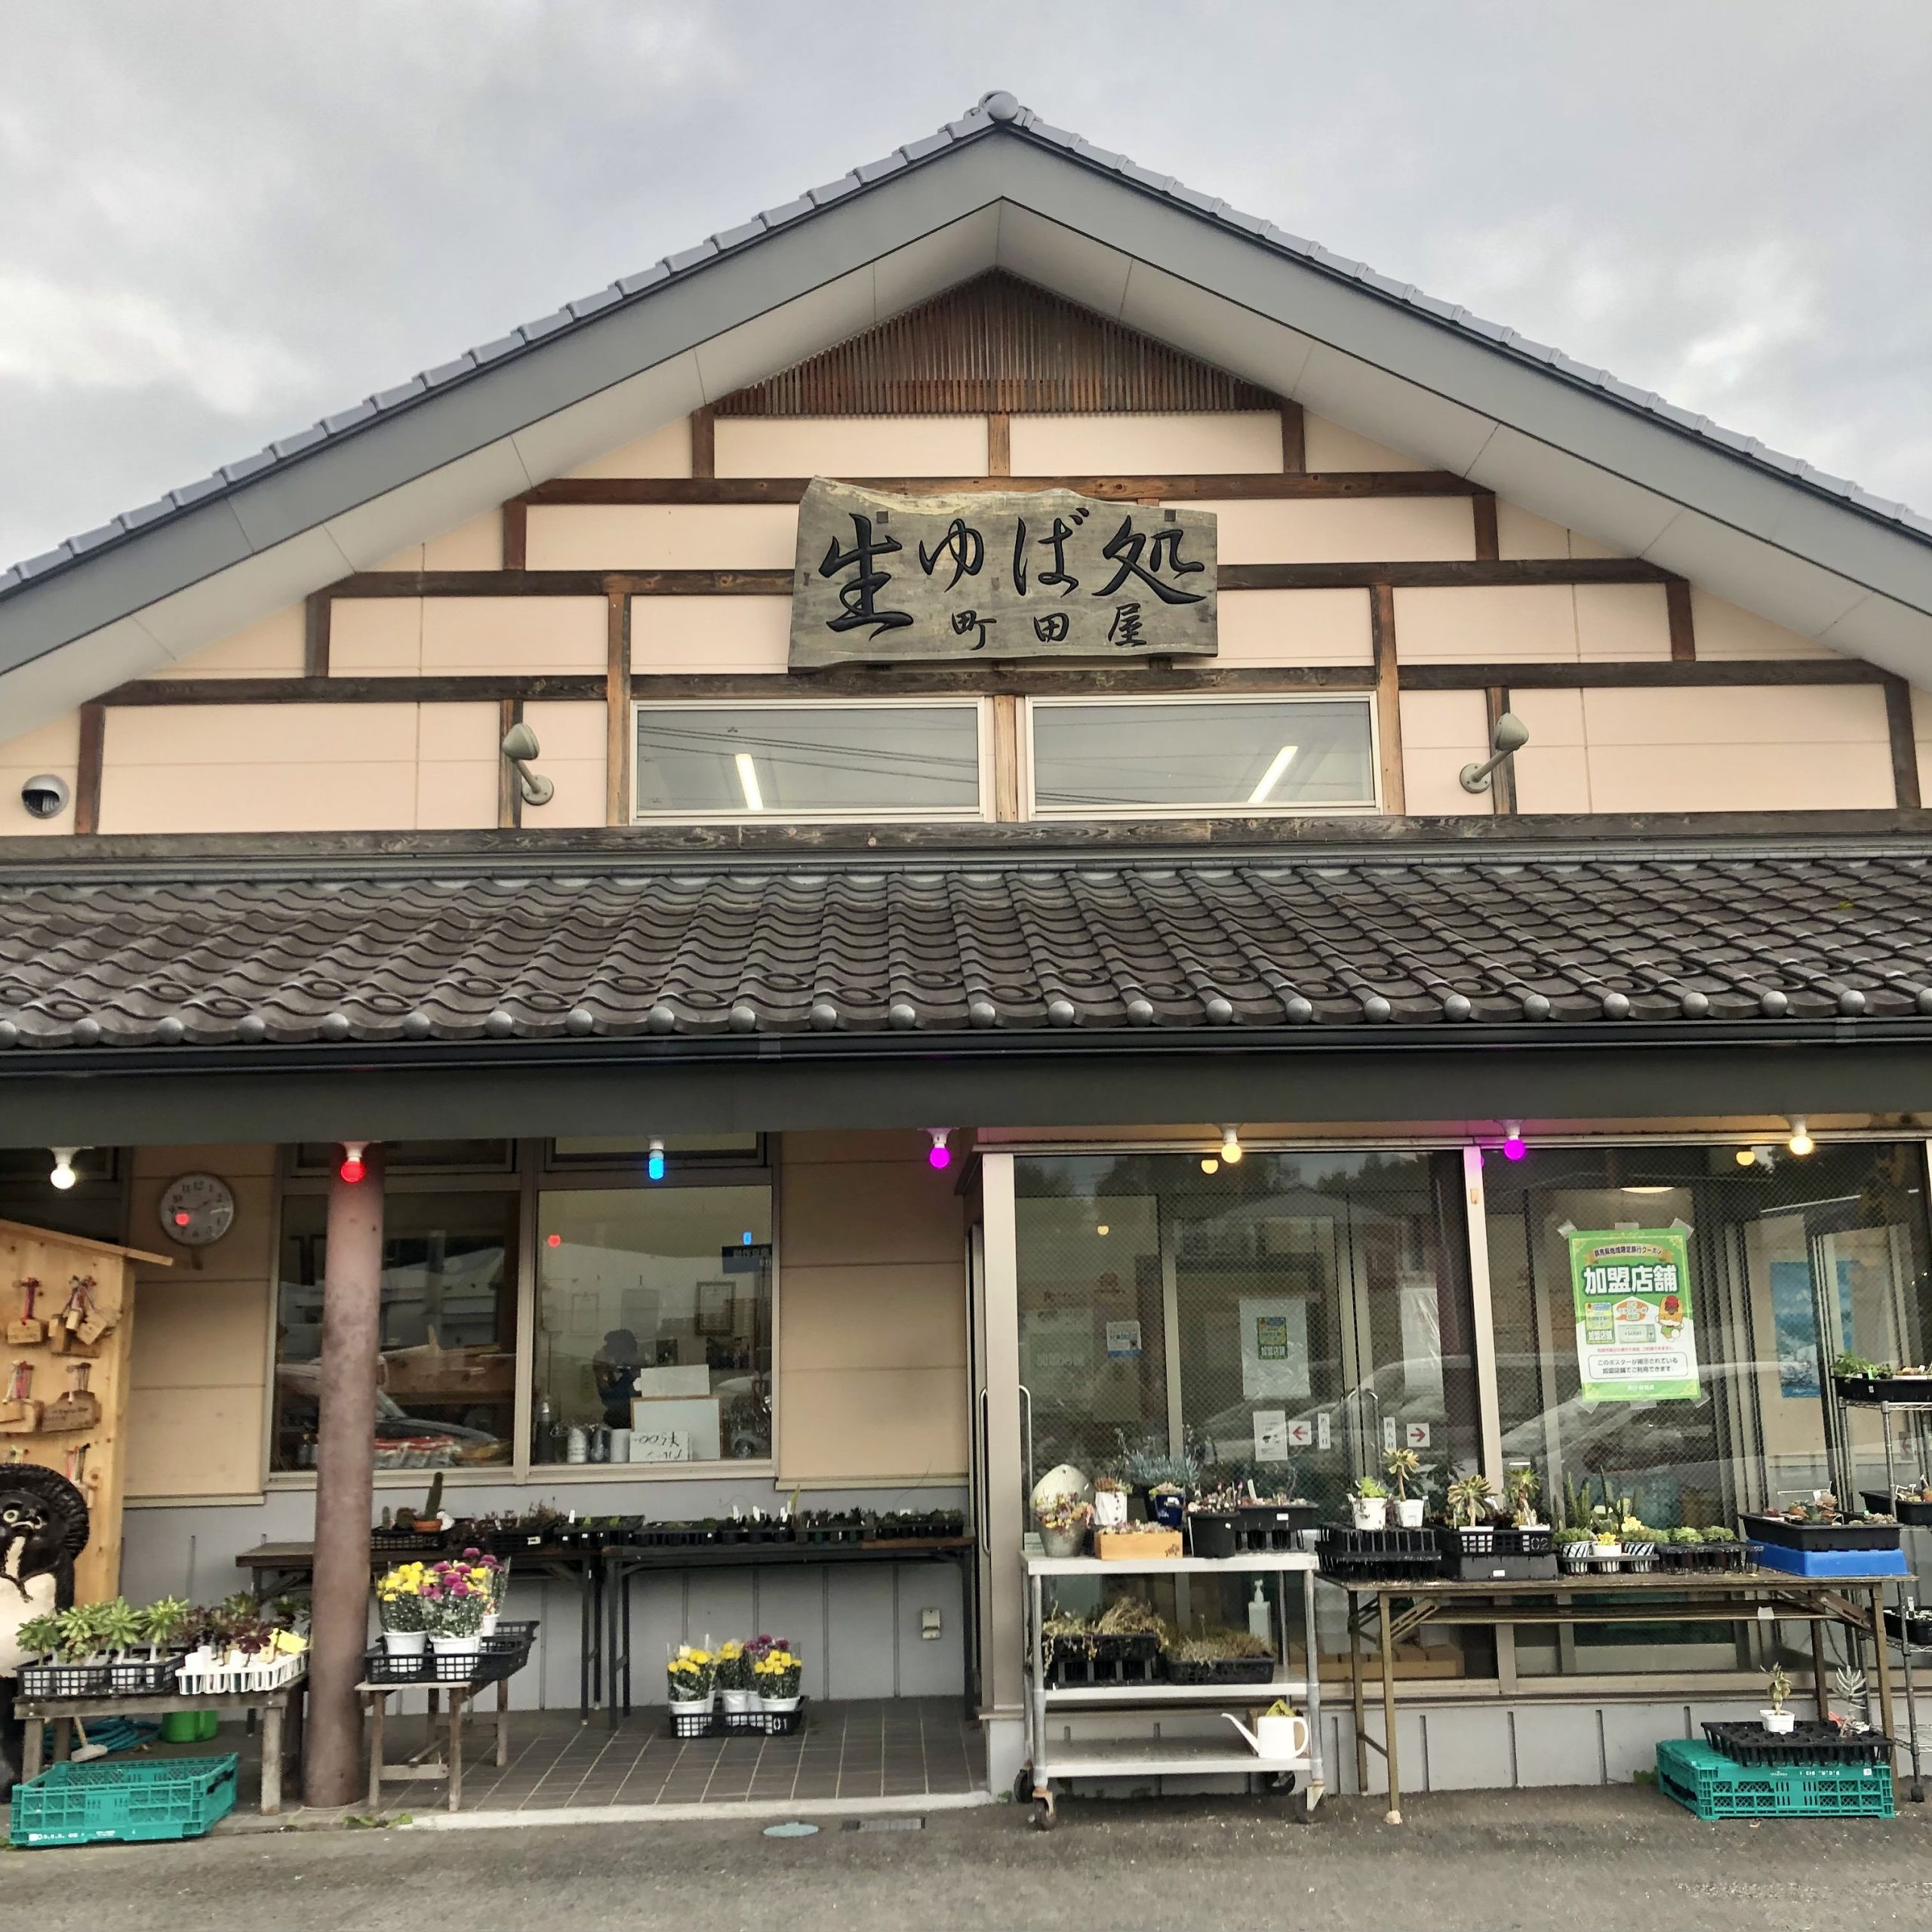 machida ya fresh yuba making in Gunma, Numata city